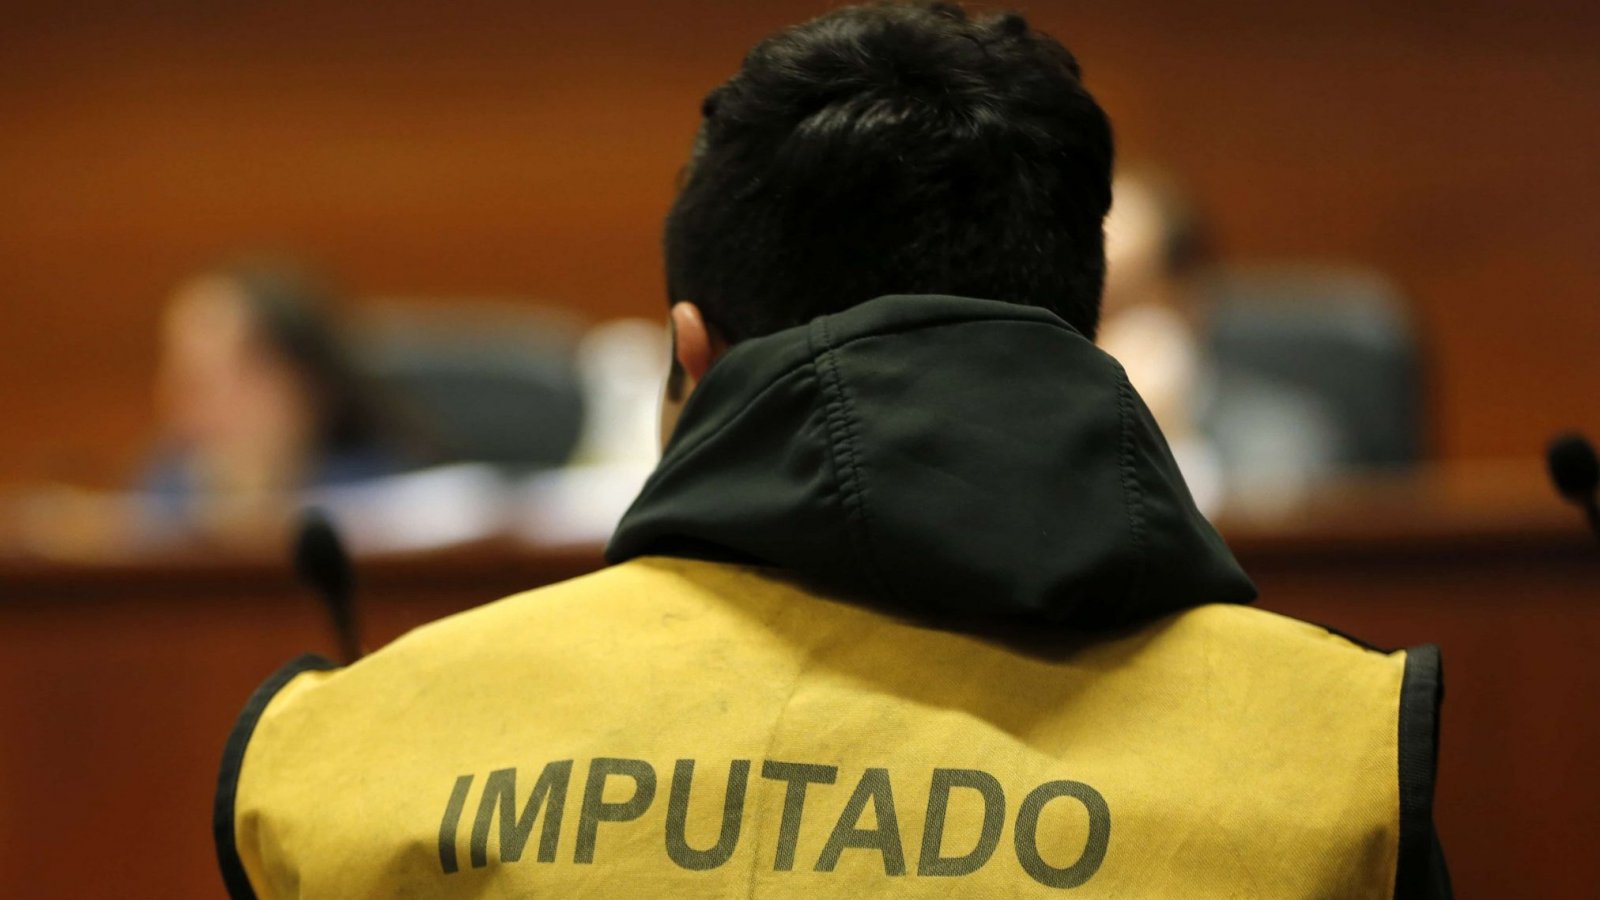 Imagen referencial de la espalda de un hombre en un tribunal, vistiendo una chaqueta amarilla que dice "imputado".